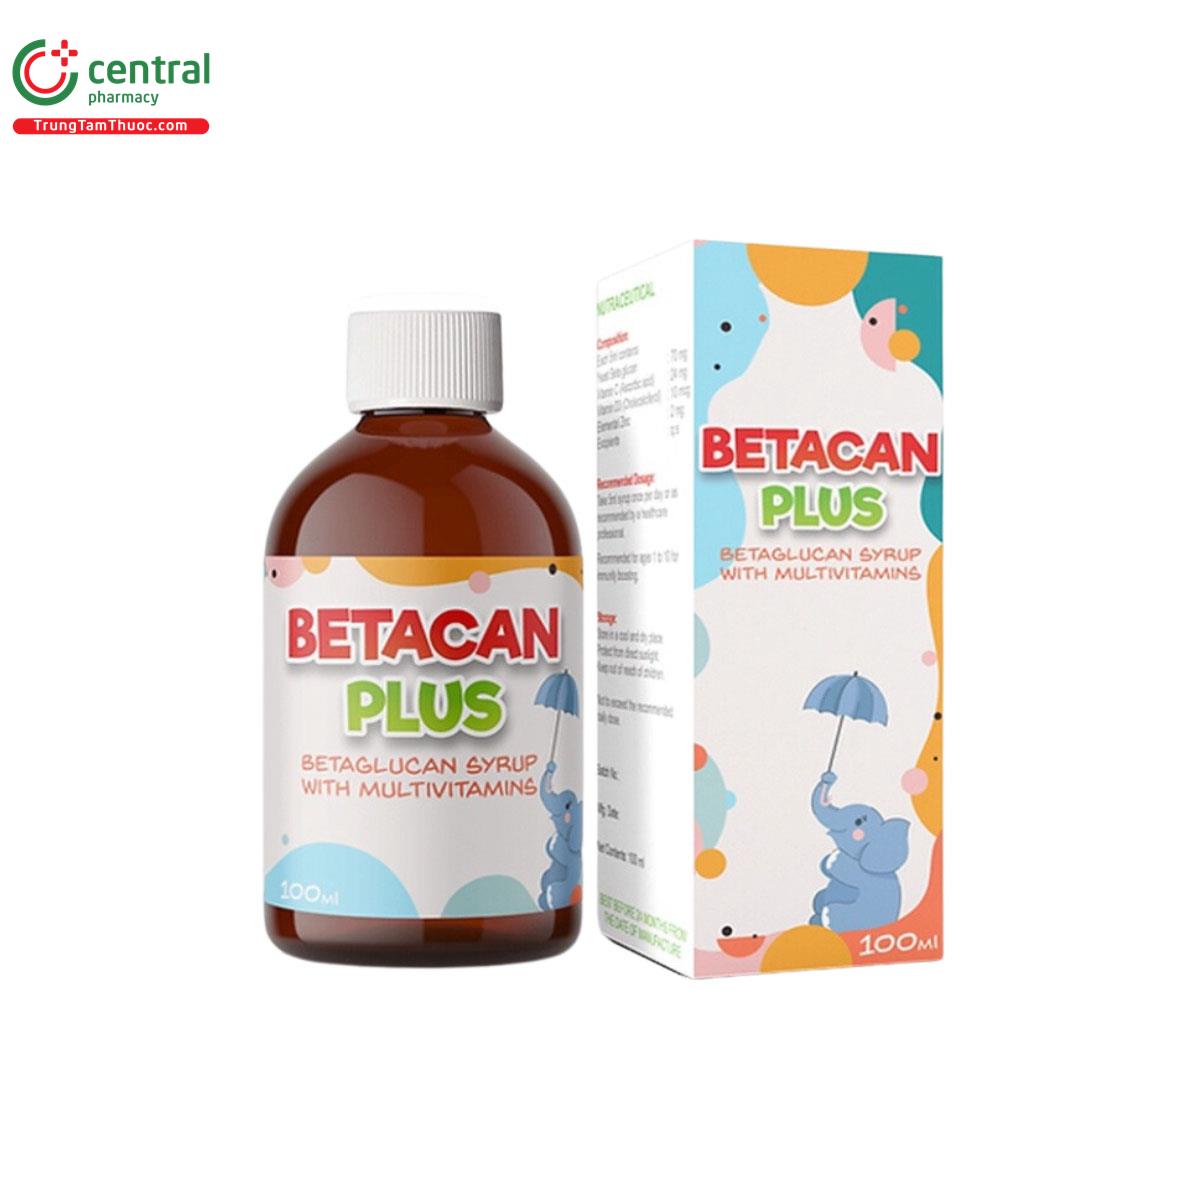 Betacan Plus